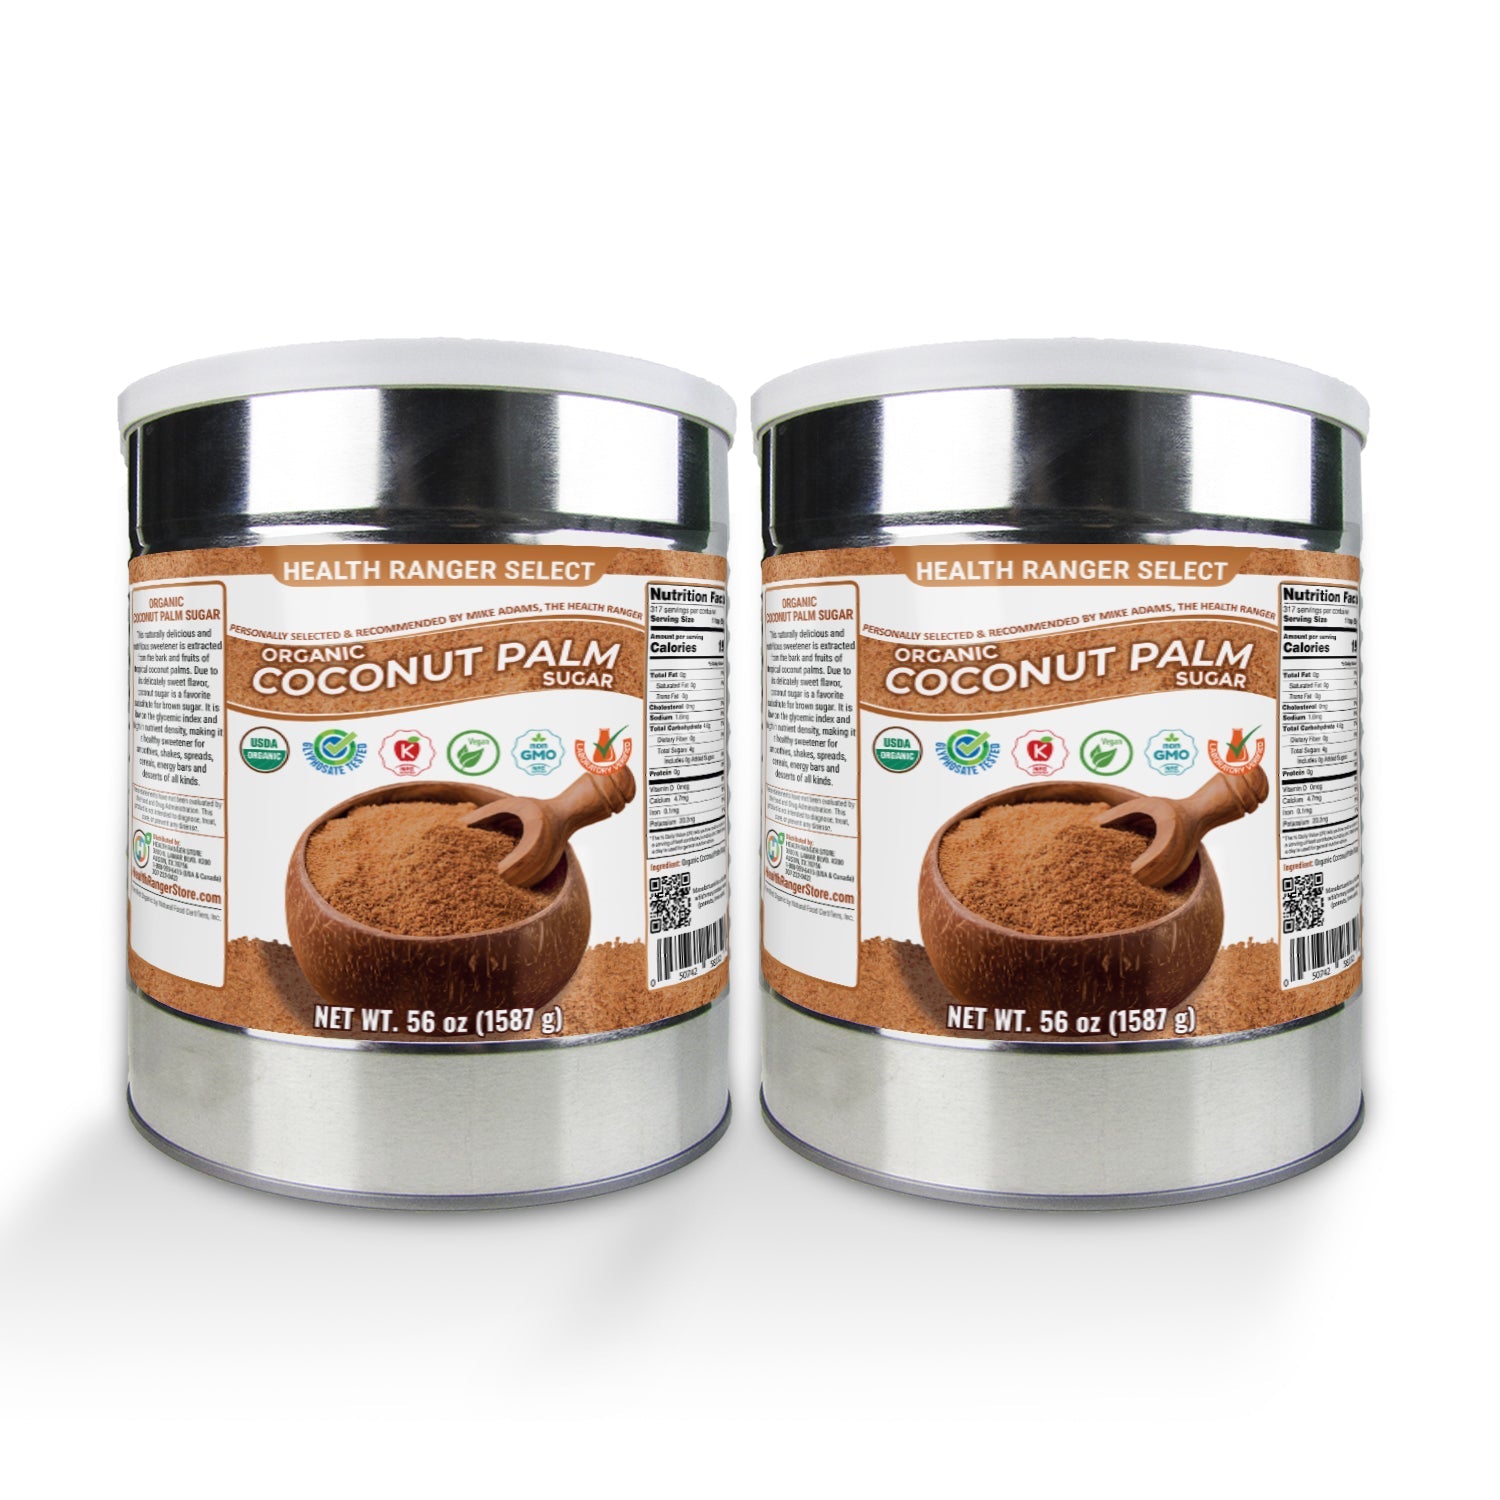 Organic Coconut Palm Sugar 56 oz (